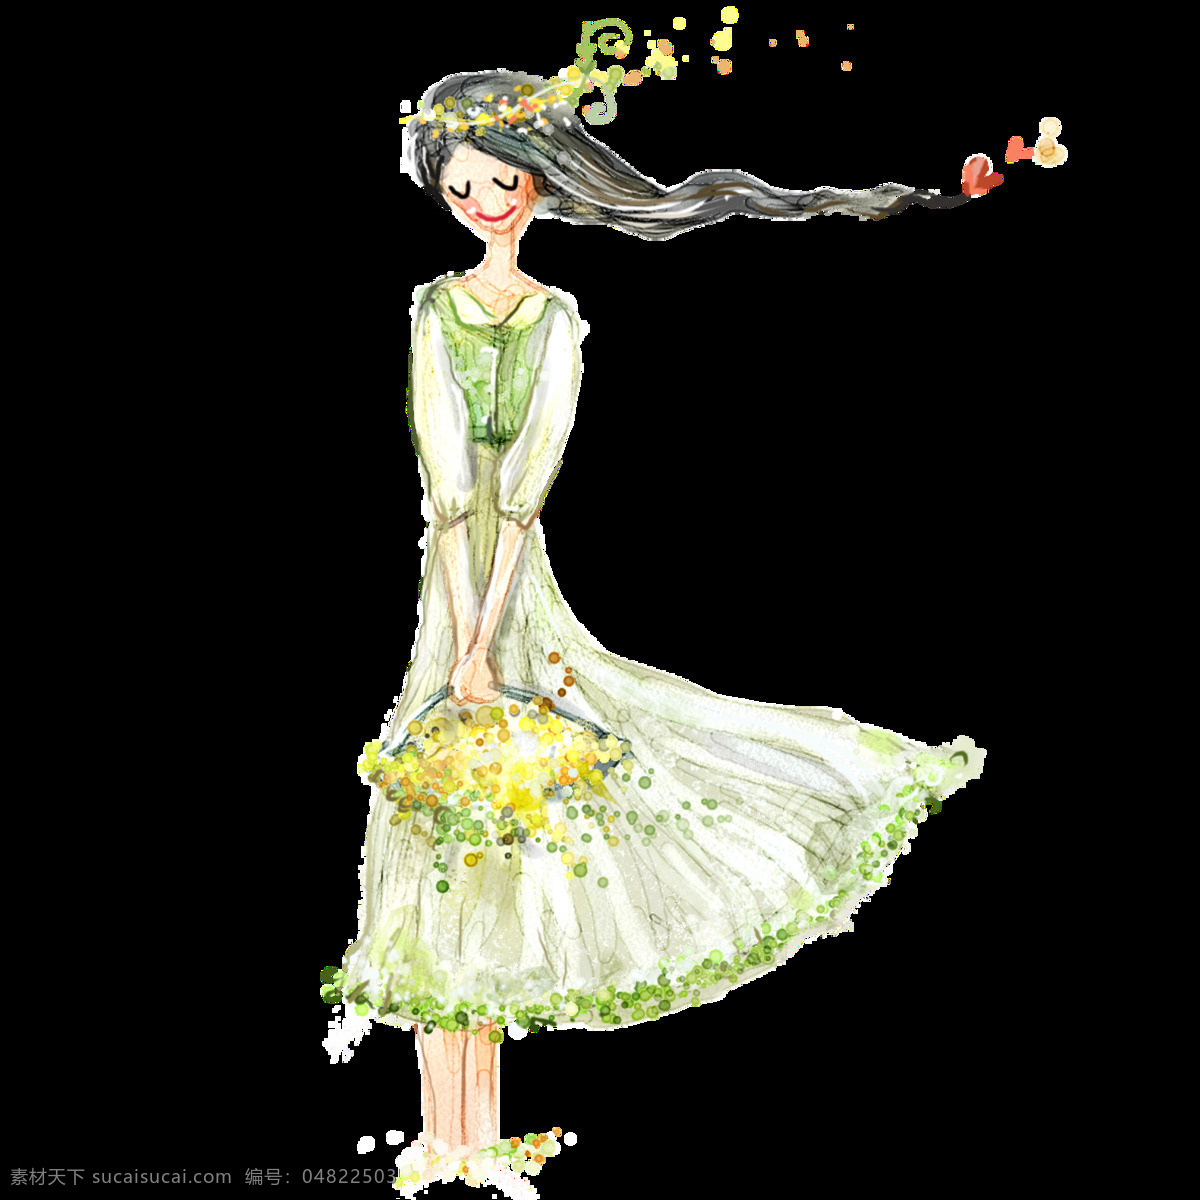 彩色 童话 人物 元素 图案 png图案 彩绘素材 花仙子 手绘图 童话人物 透明素材 唯美装饰 装饰图片